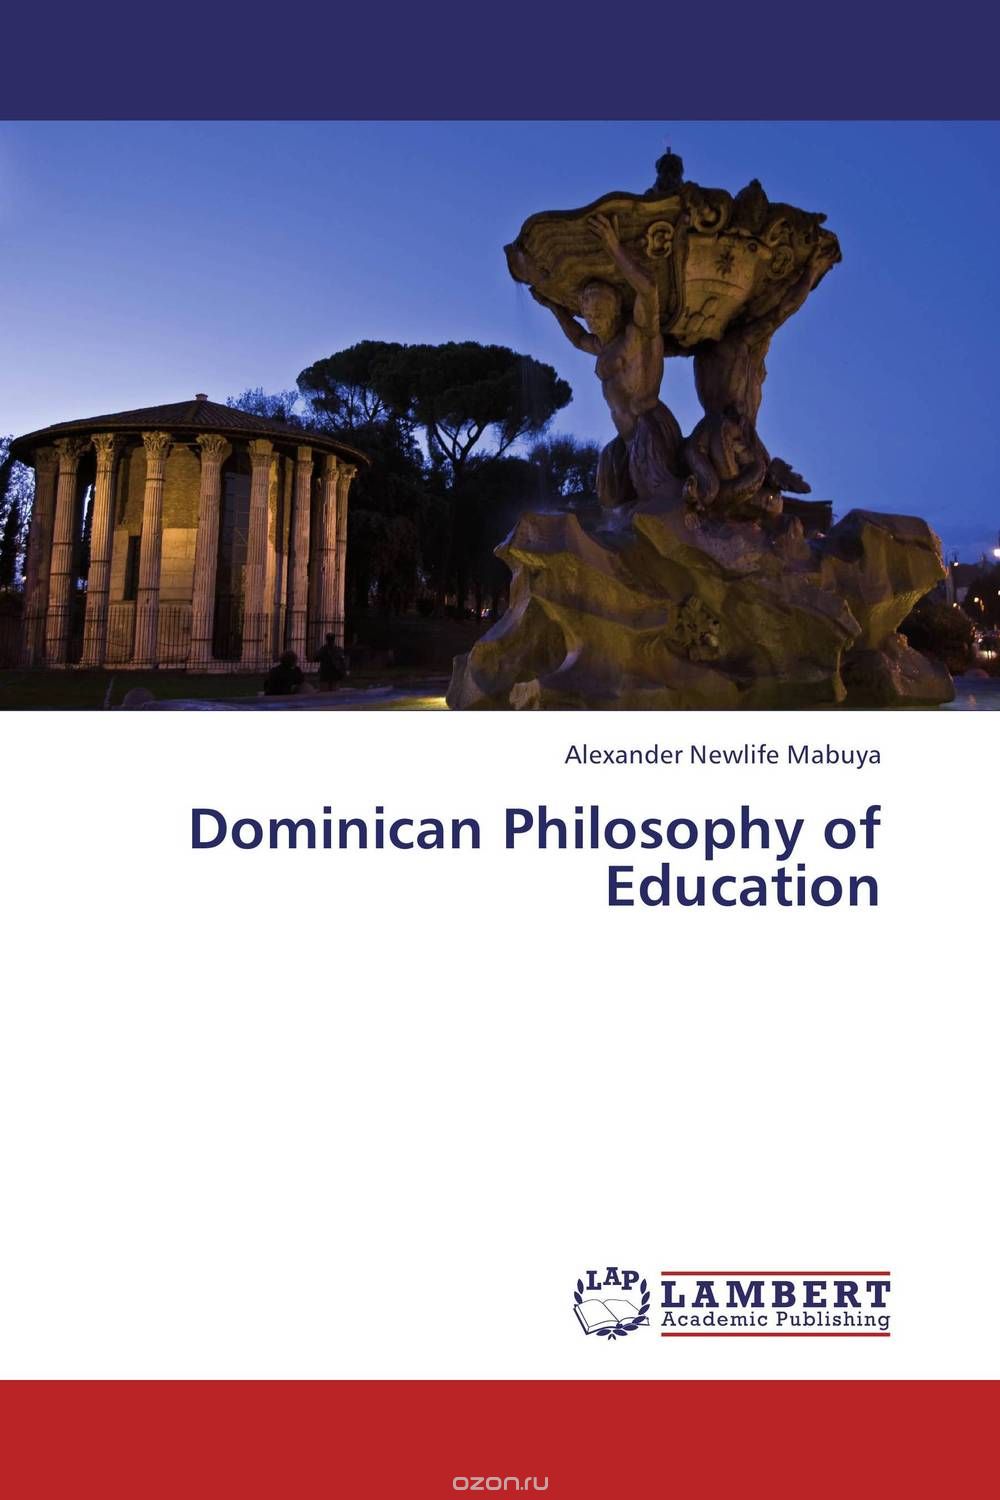 Скачать книгу "Dominican Philosophy of Education"